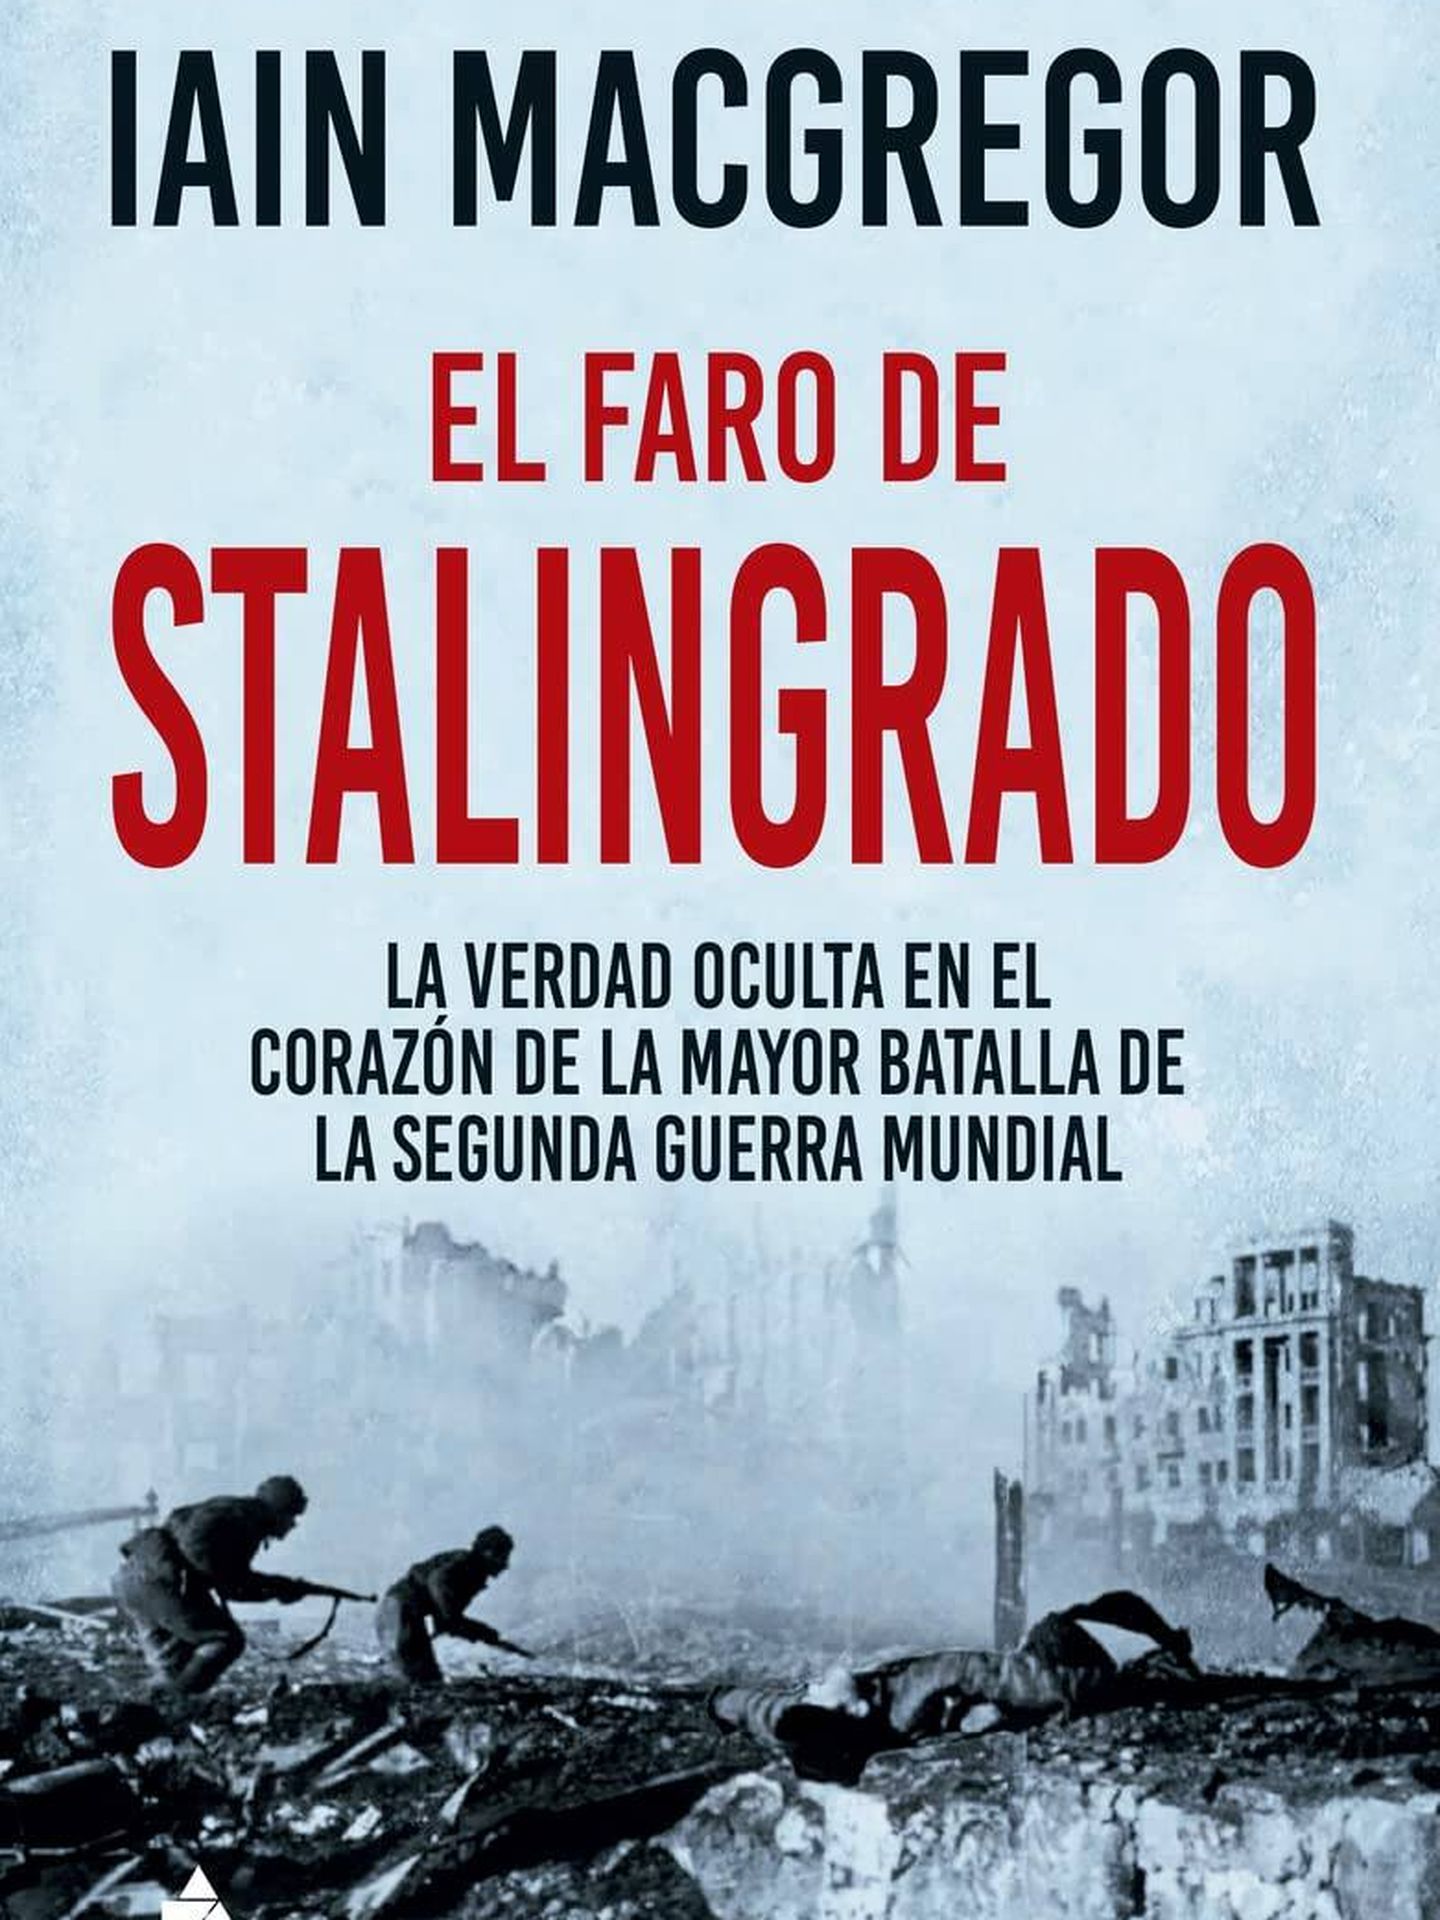 Portada de 'El Faro de Stalingrado. La verdad oculta en el corazón de la mayor batalla de la Segunda Guerra Mundial', del historiador Iain Macgregor.